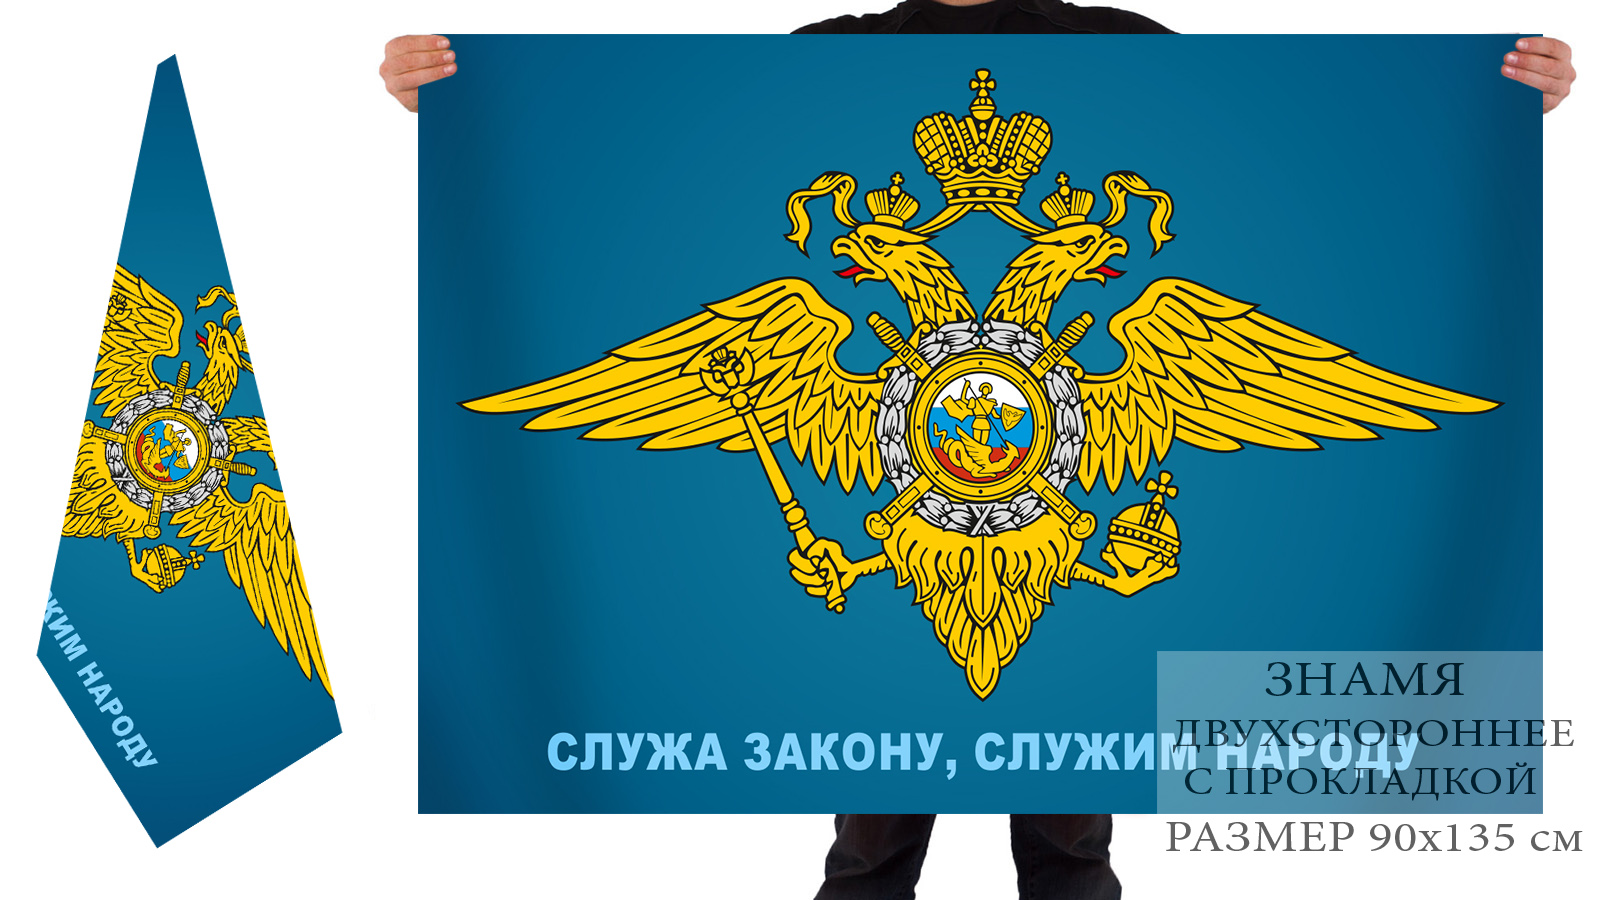 Купить в Москве флаг МВД с девизом – цена производителя